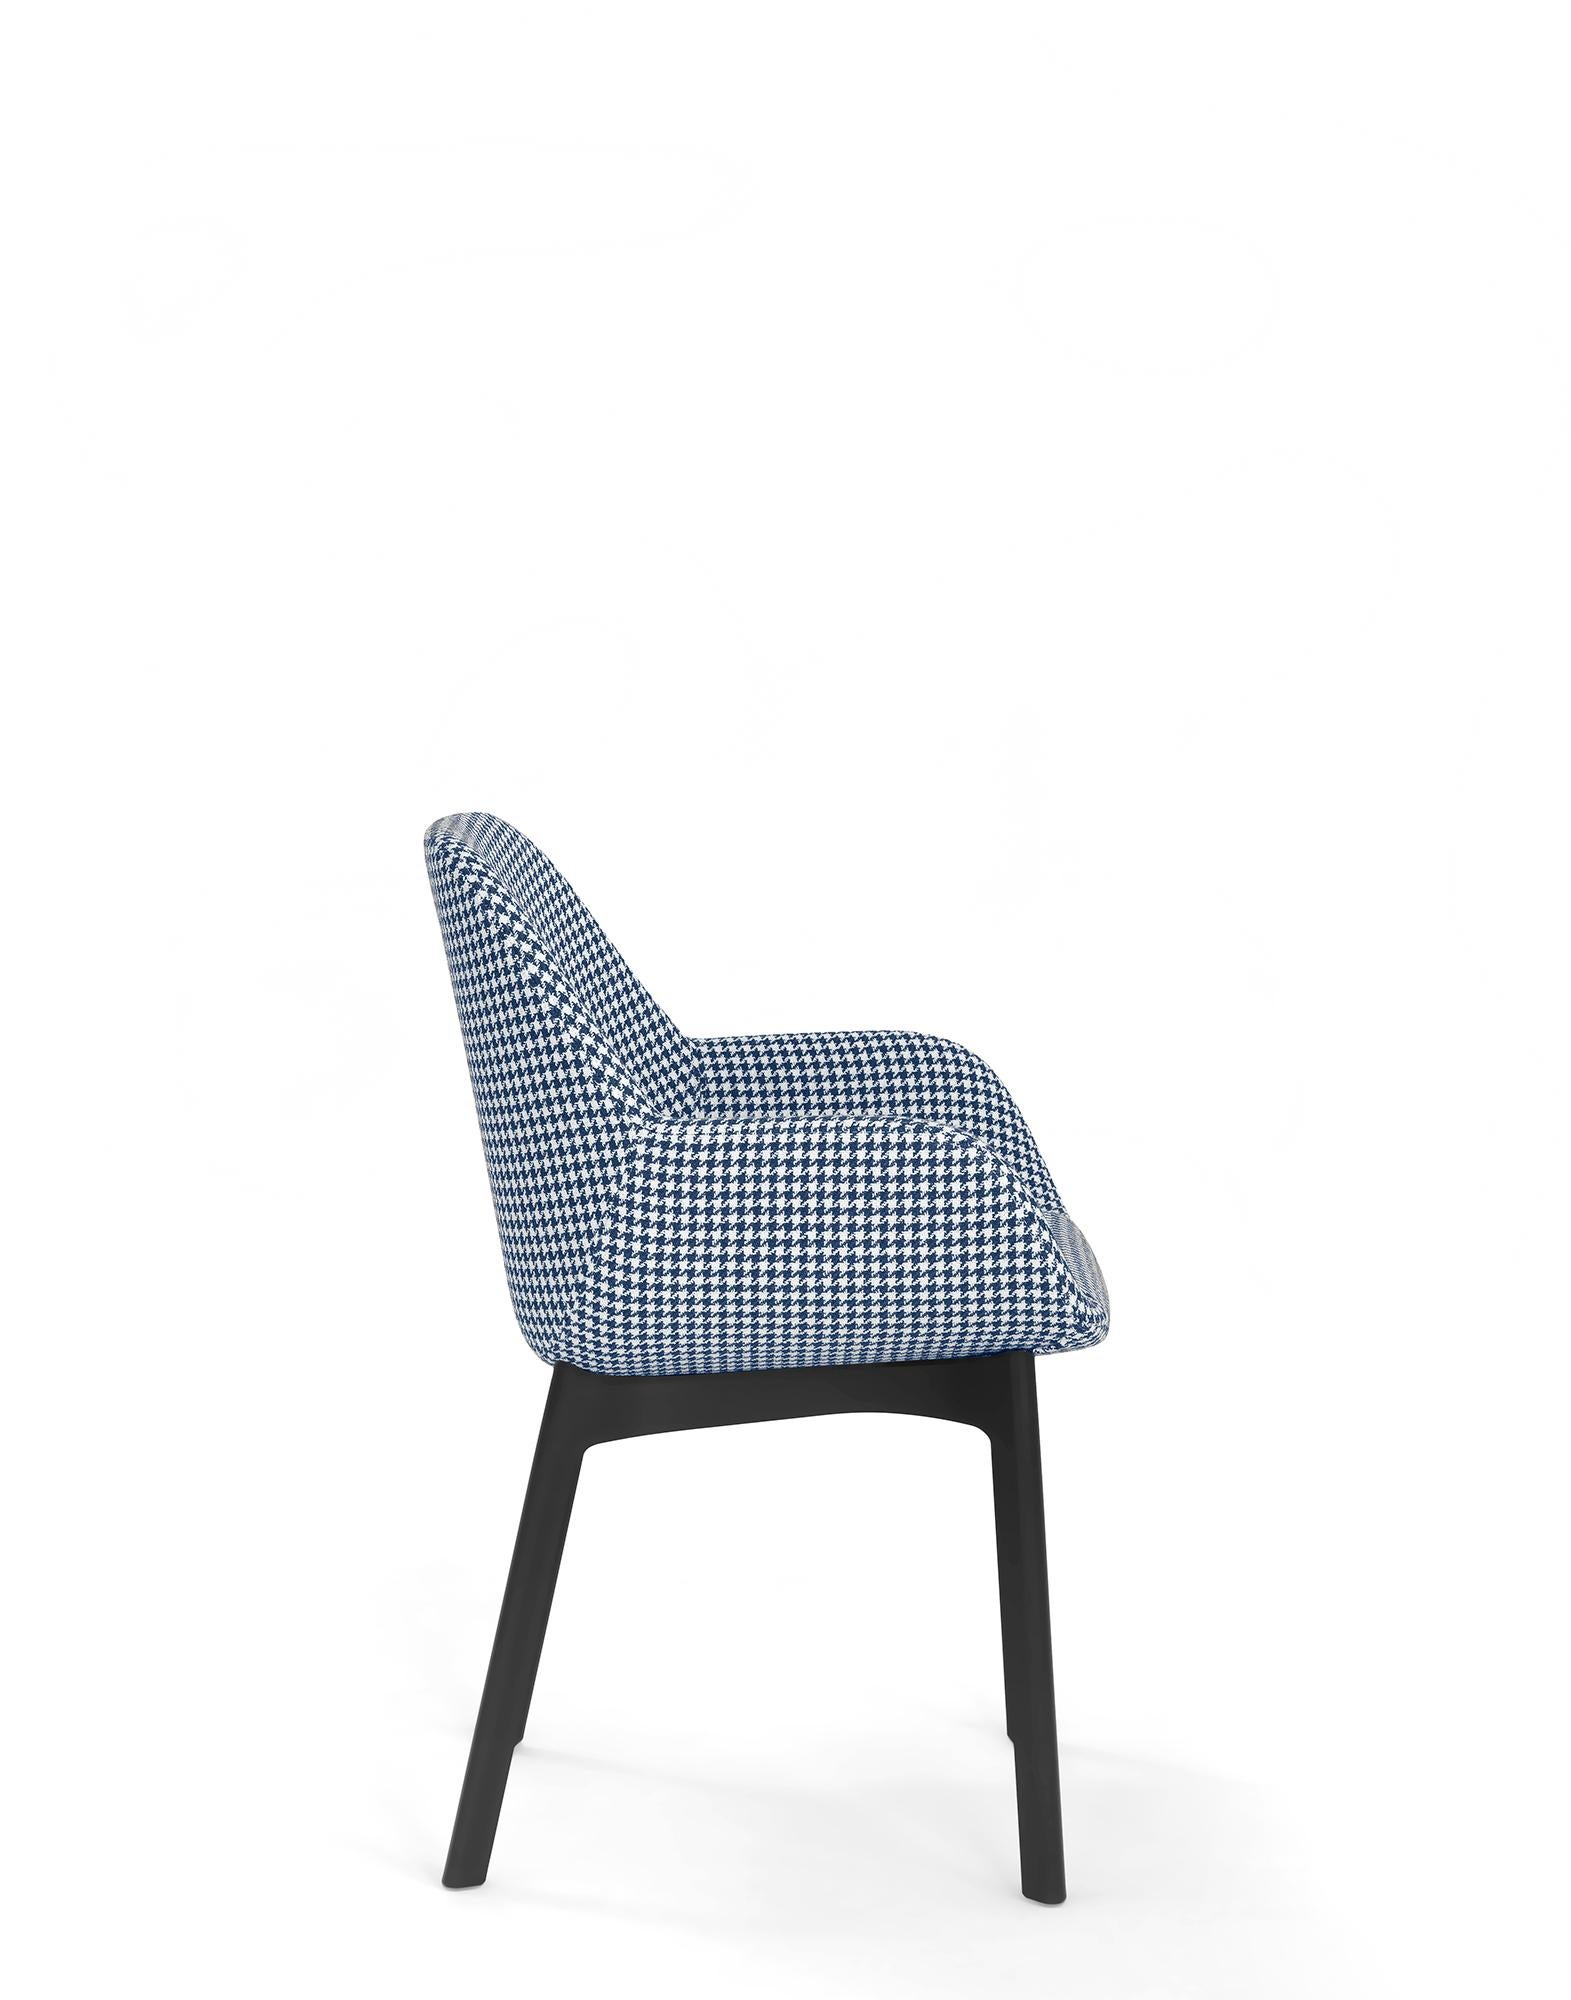 Clap ist ein kleiner Stuhl, der speziell für den Objektbereich entwickelt wurde und sich für die unterschiedlichsten Einrichtungsanforderungen eignet.

Die Sitzstruktur ist in verschiedenen Farben erhältlich, die quer zu den Mustern des Gestells